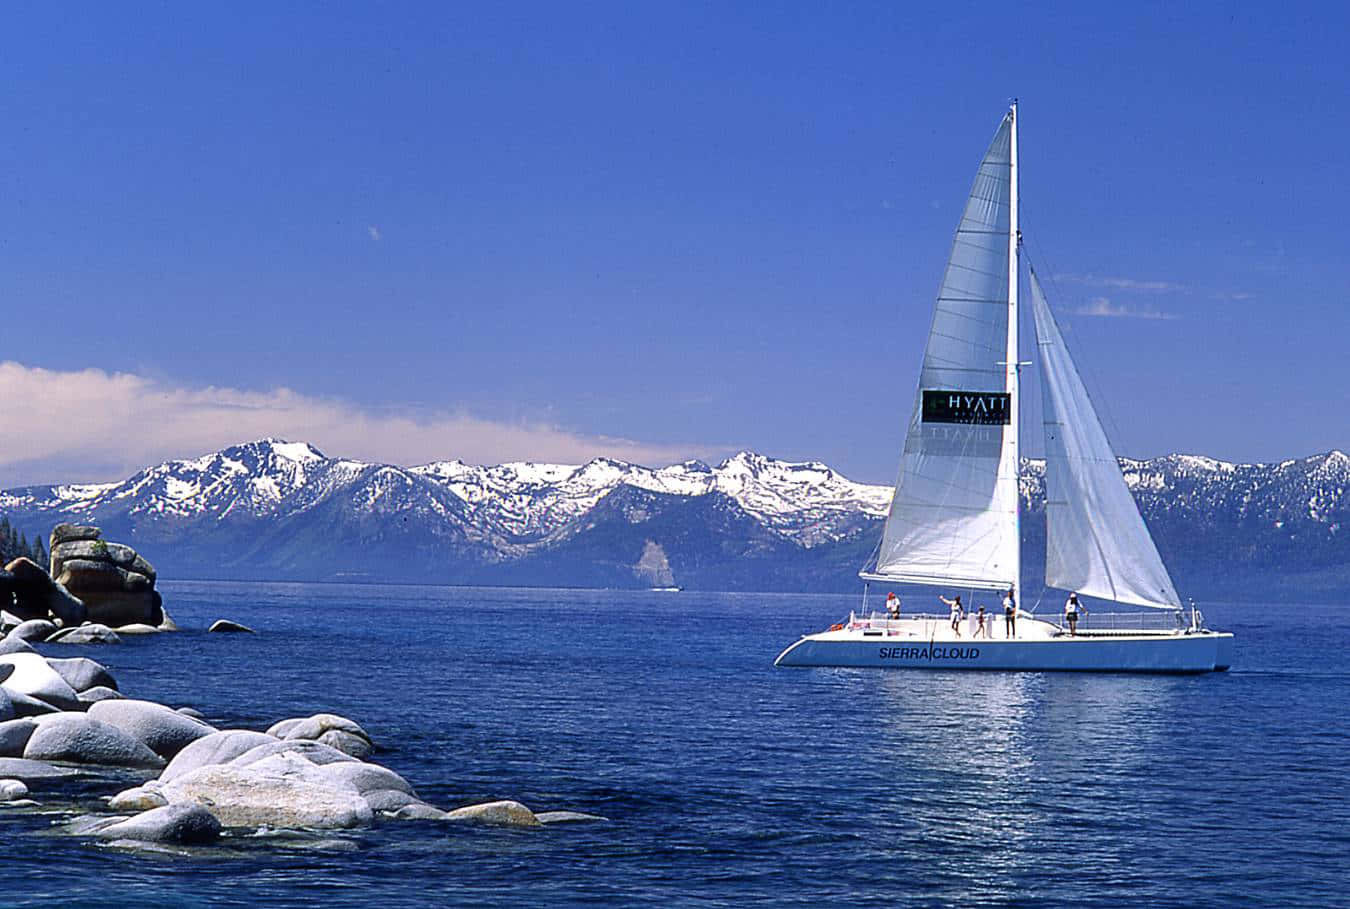 Respirael Aire Fresco Mientras Disfrutas De Un Hermoso Paseo En Barco Bajo El Sol.